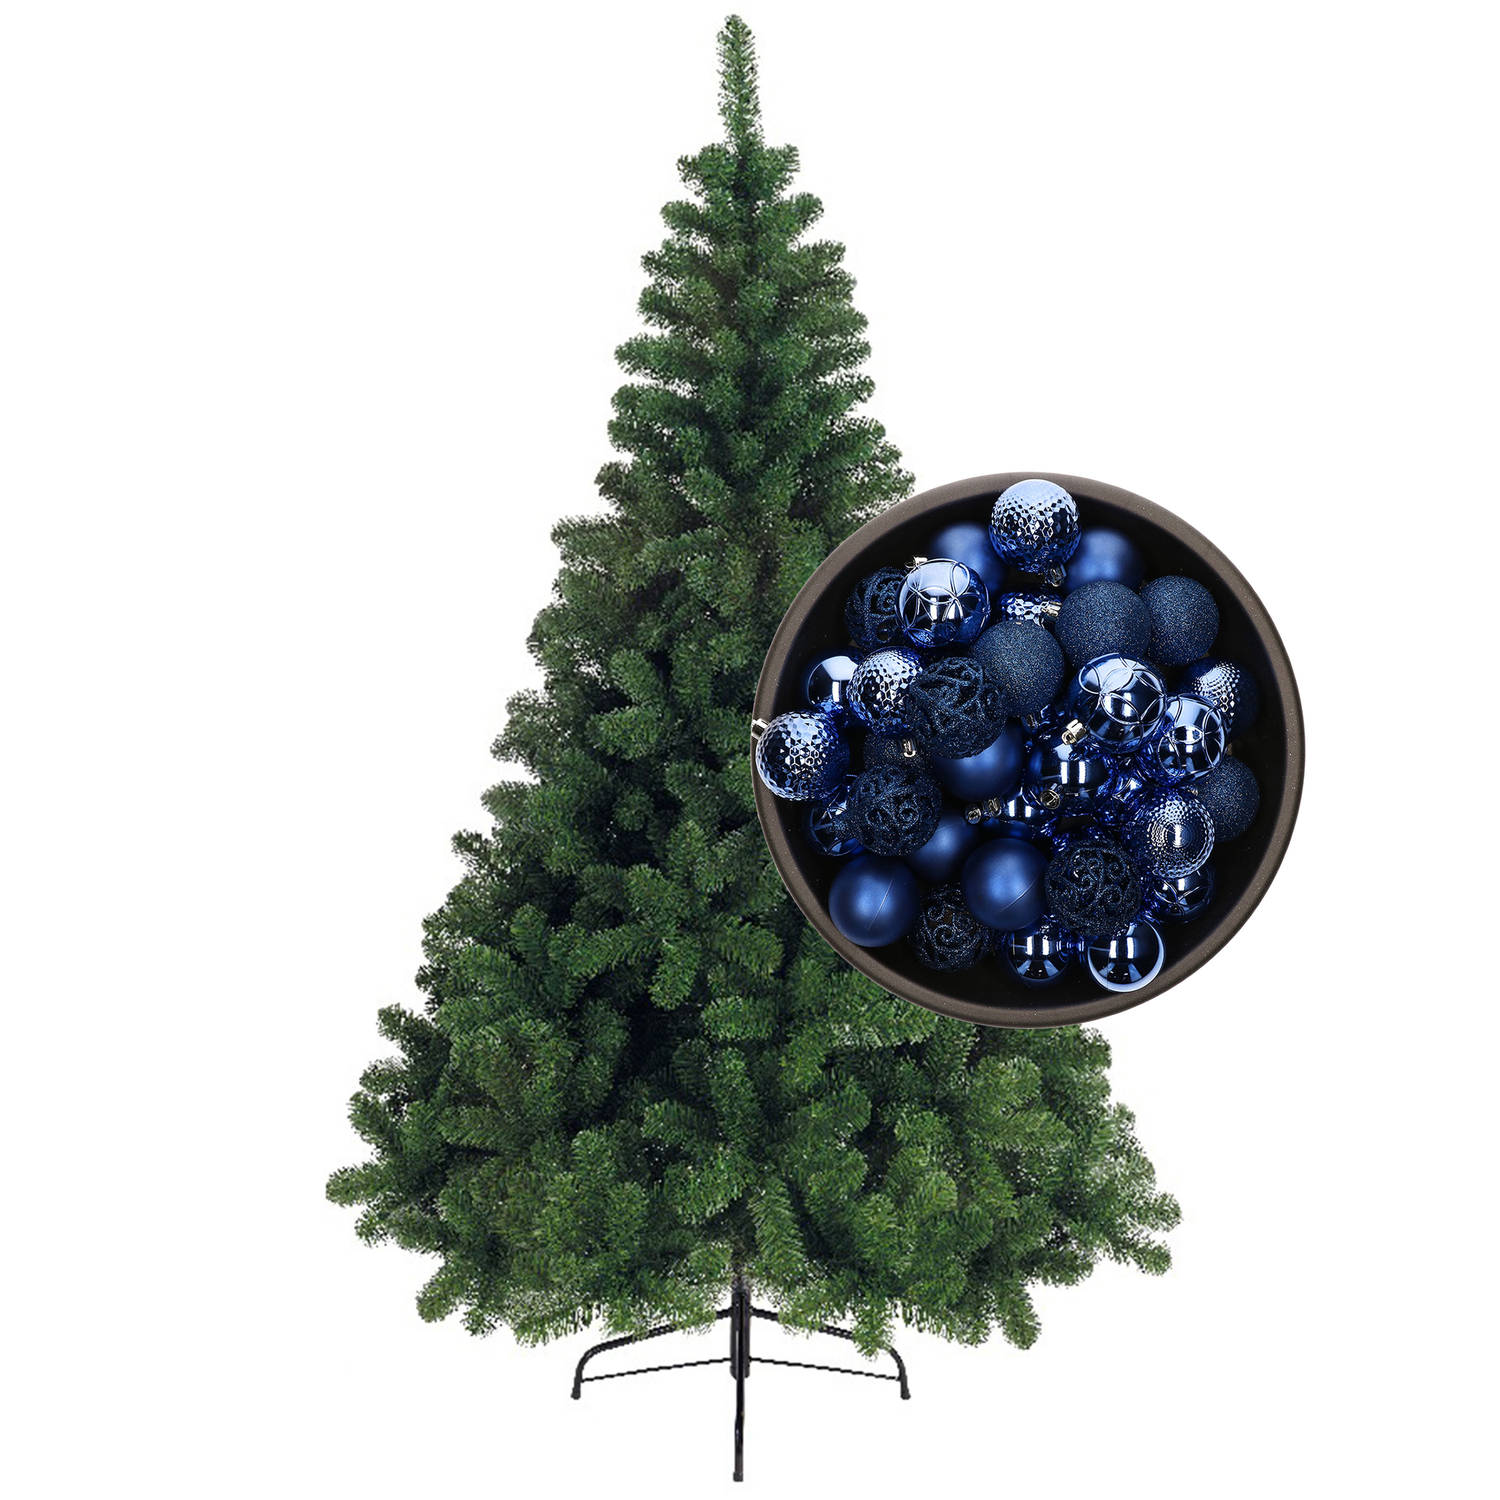 Bellatio Decorations kunst kerstboom 150 cm met kerstballen kobalt blauw Kunstkerstboom